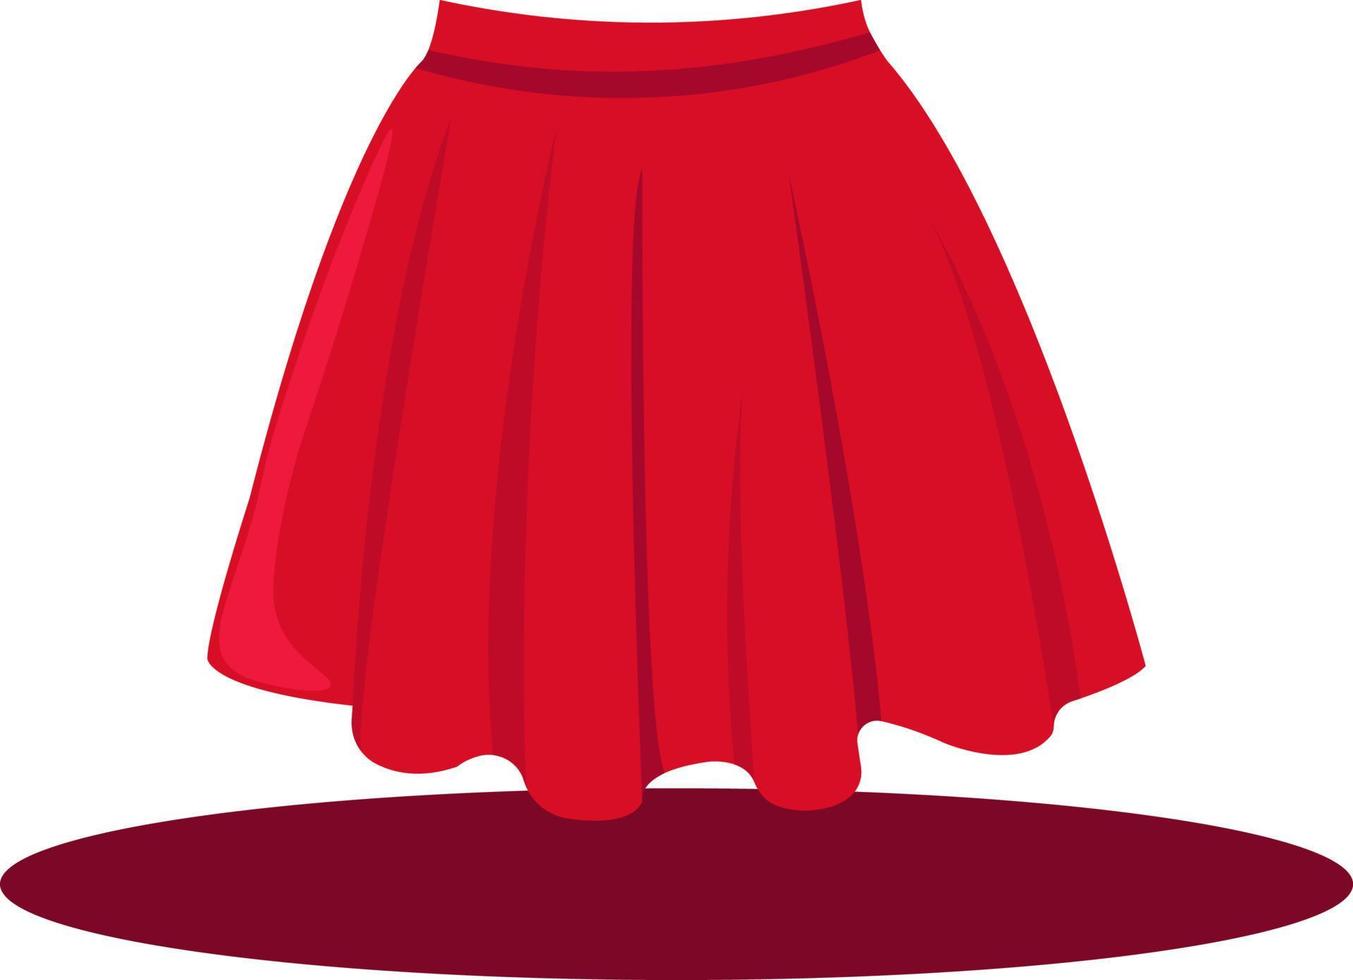 falda de mujer roja, ilustración, vector sobre fondo blanco.